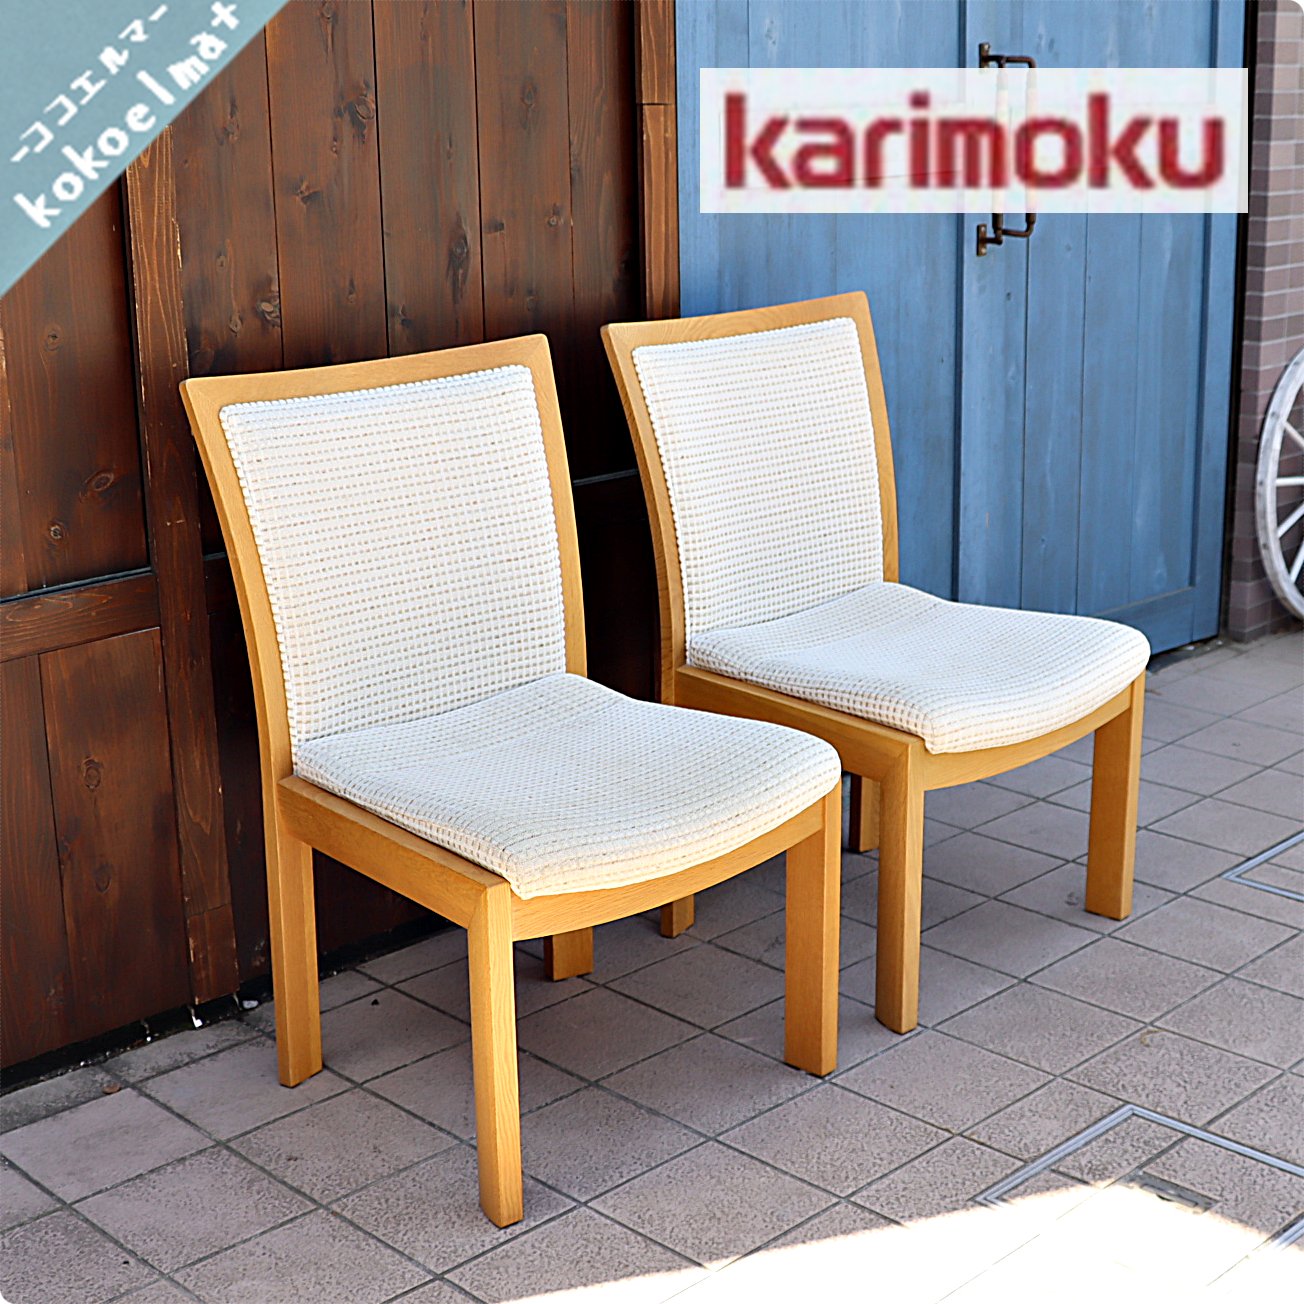 karimoku(カリモク家具)のオーク材を使用したダイニングチェア CU5405